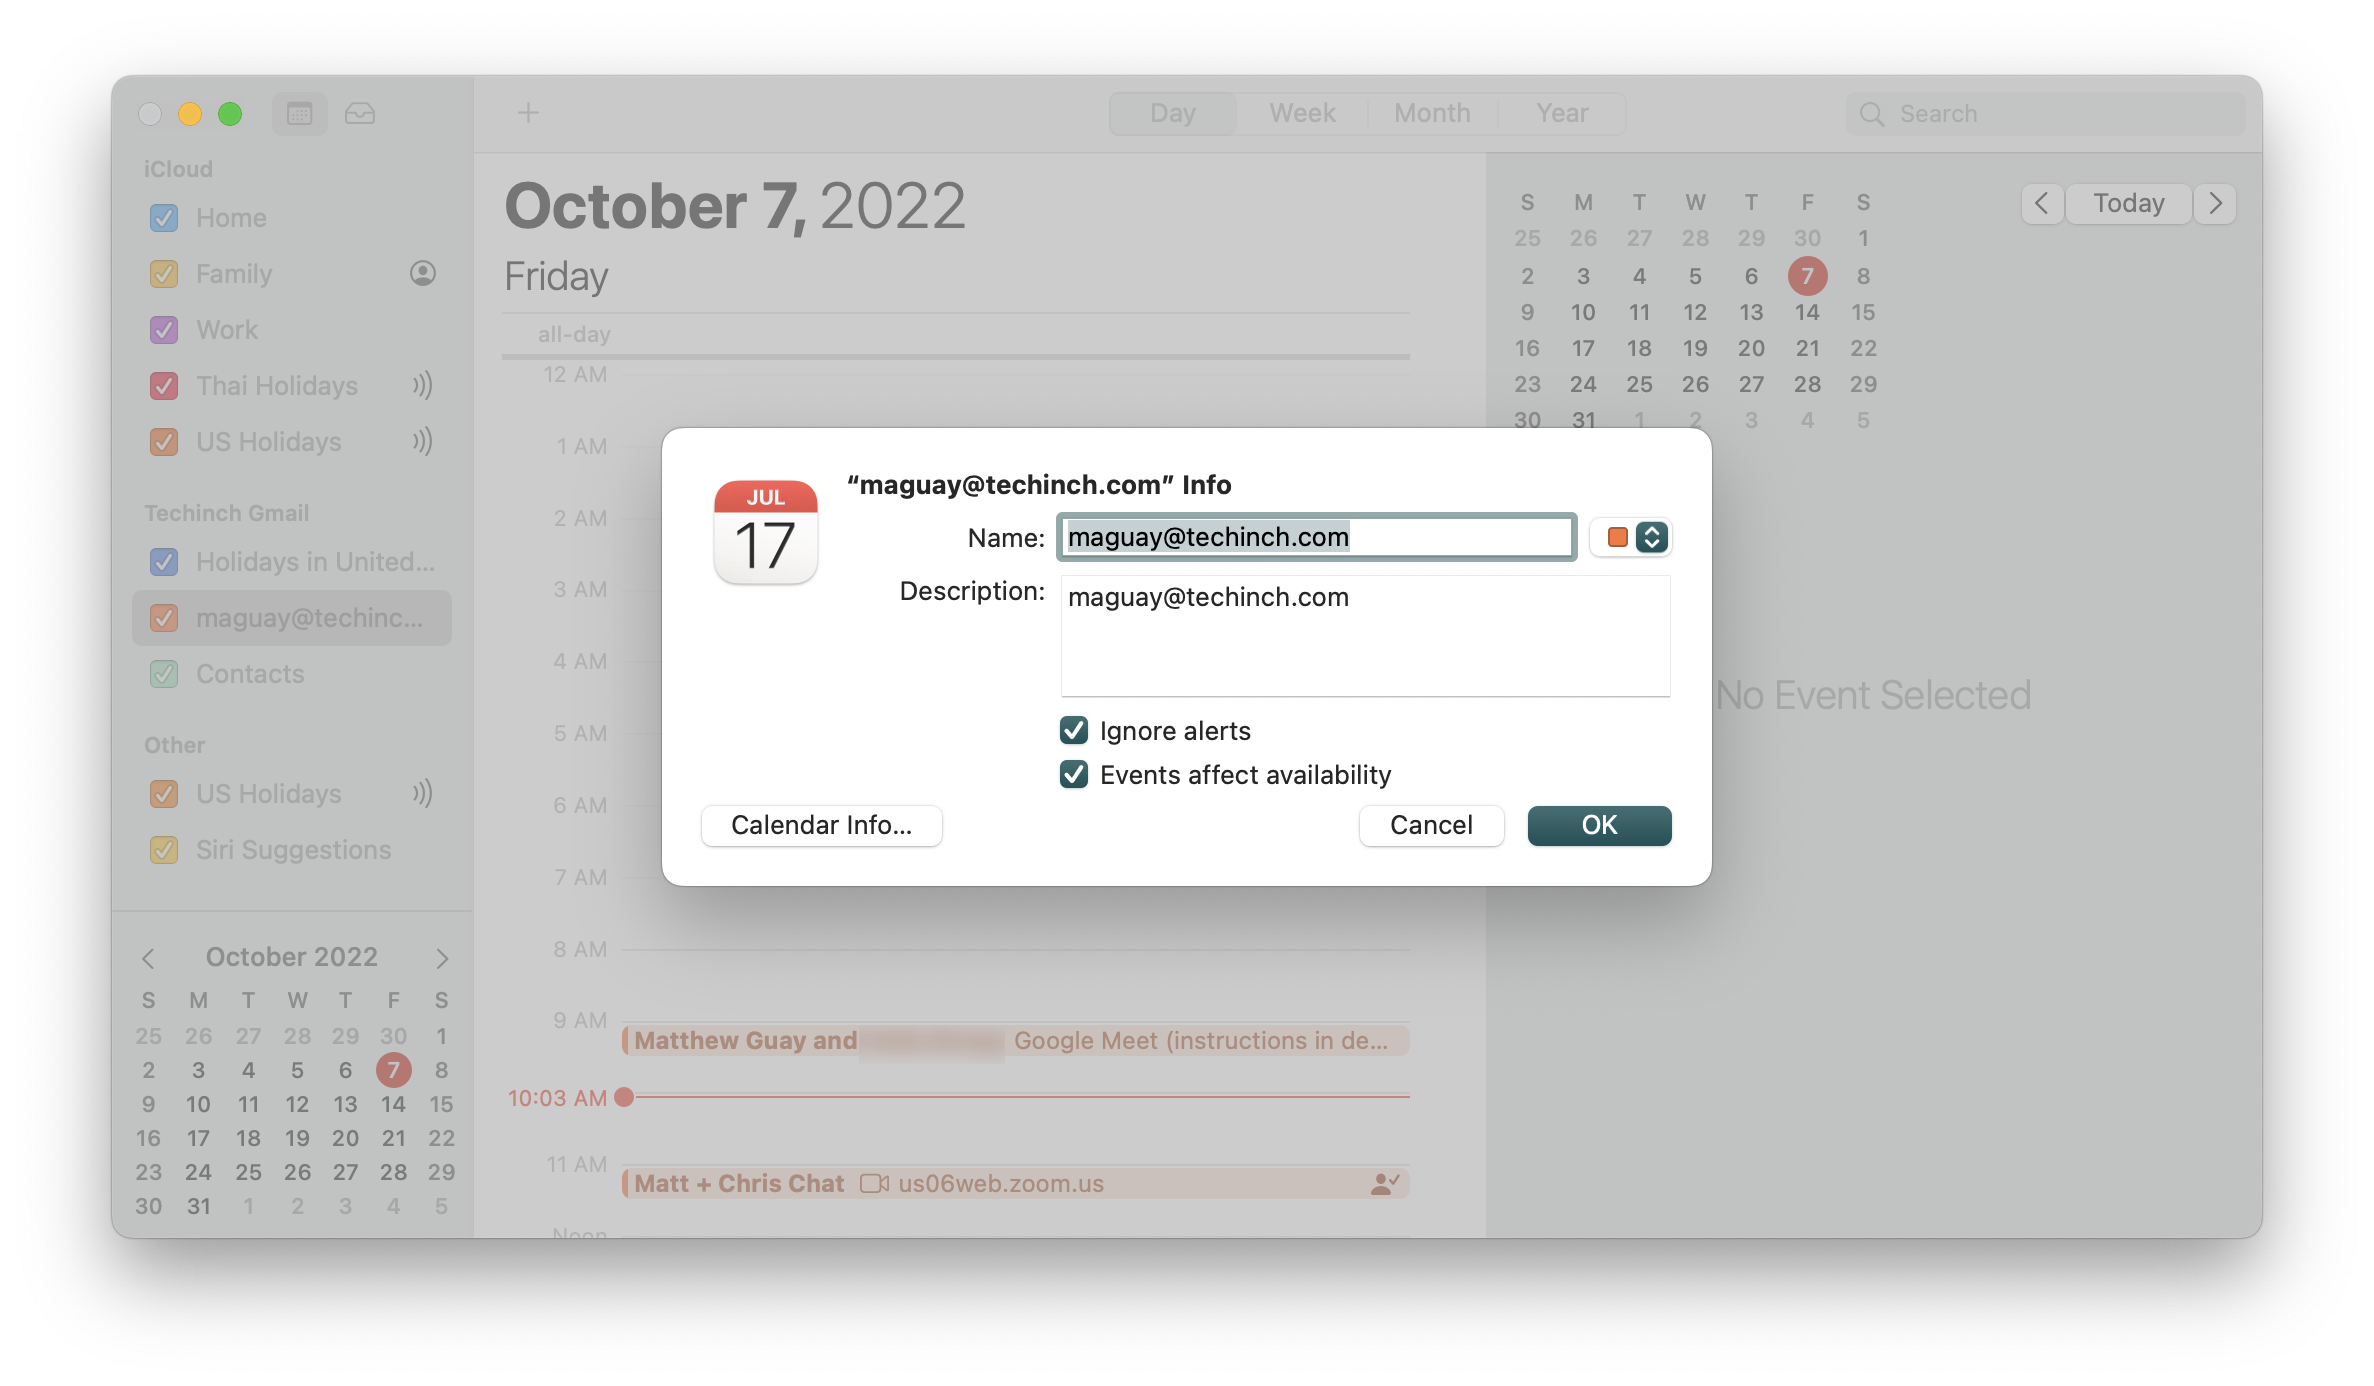 A screenshot of calendar info and alert options in Apple Calendar